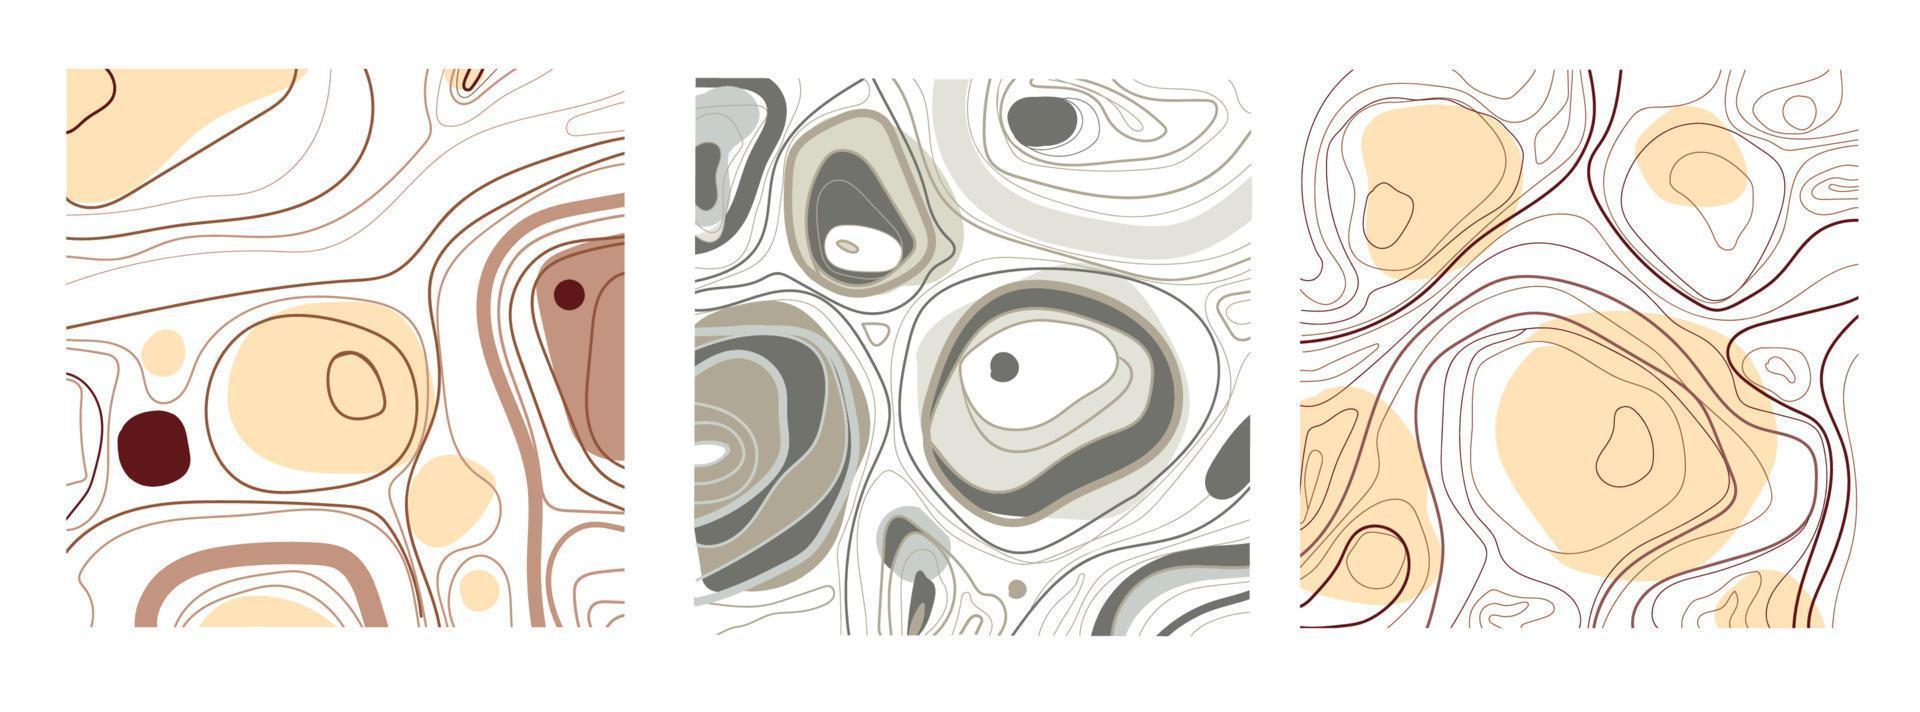 conjunto de três fundos abstratos. desenhado à mão em várias formas simples, linhas e manchas em cores pastel. ilustração vetorial moderna. cada fundo é isolado no branco. projeto artístico de parede. vetor